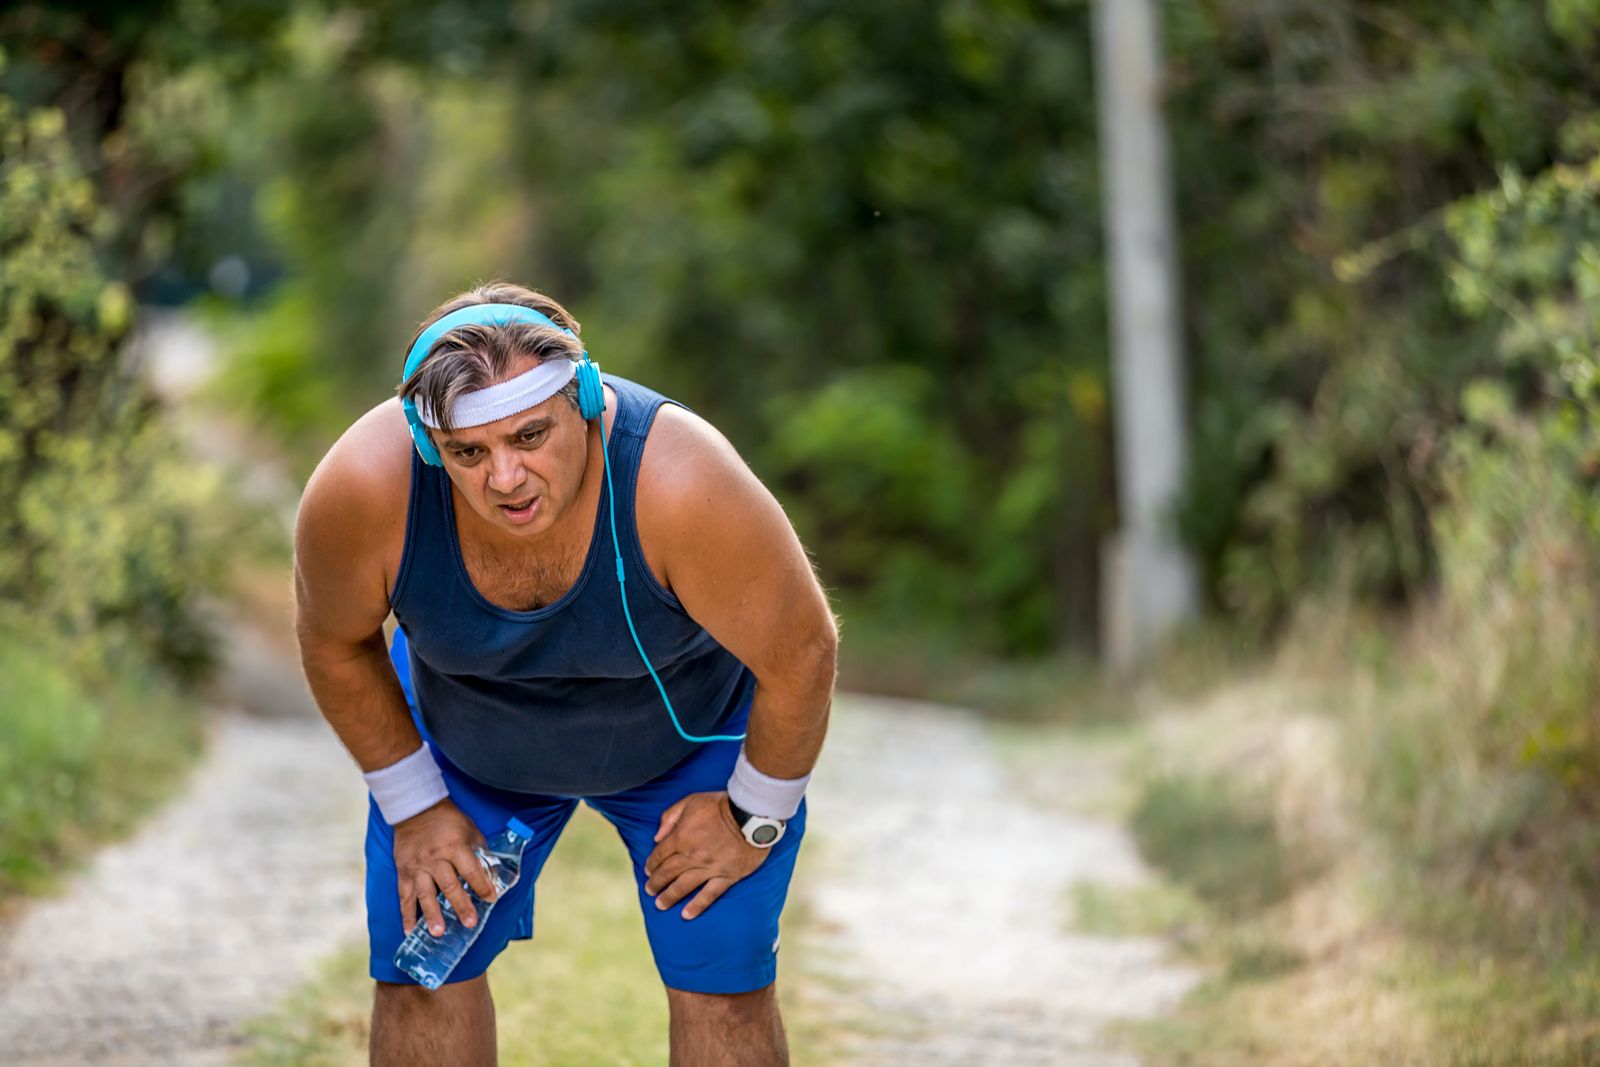  تساعد التمارين الرياضية وفقدان الوزن الزائد على تقليل احتمالية تفاقم مشكلة ضيق النفس - Getty Images